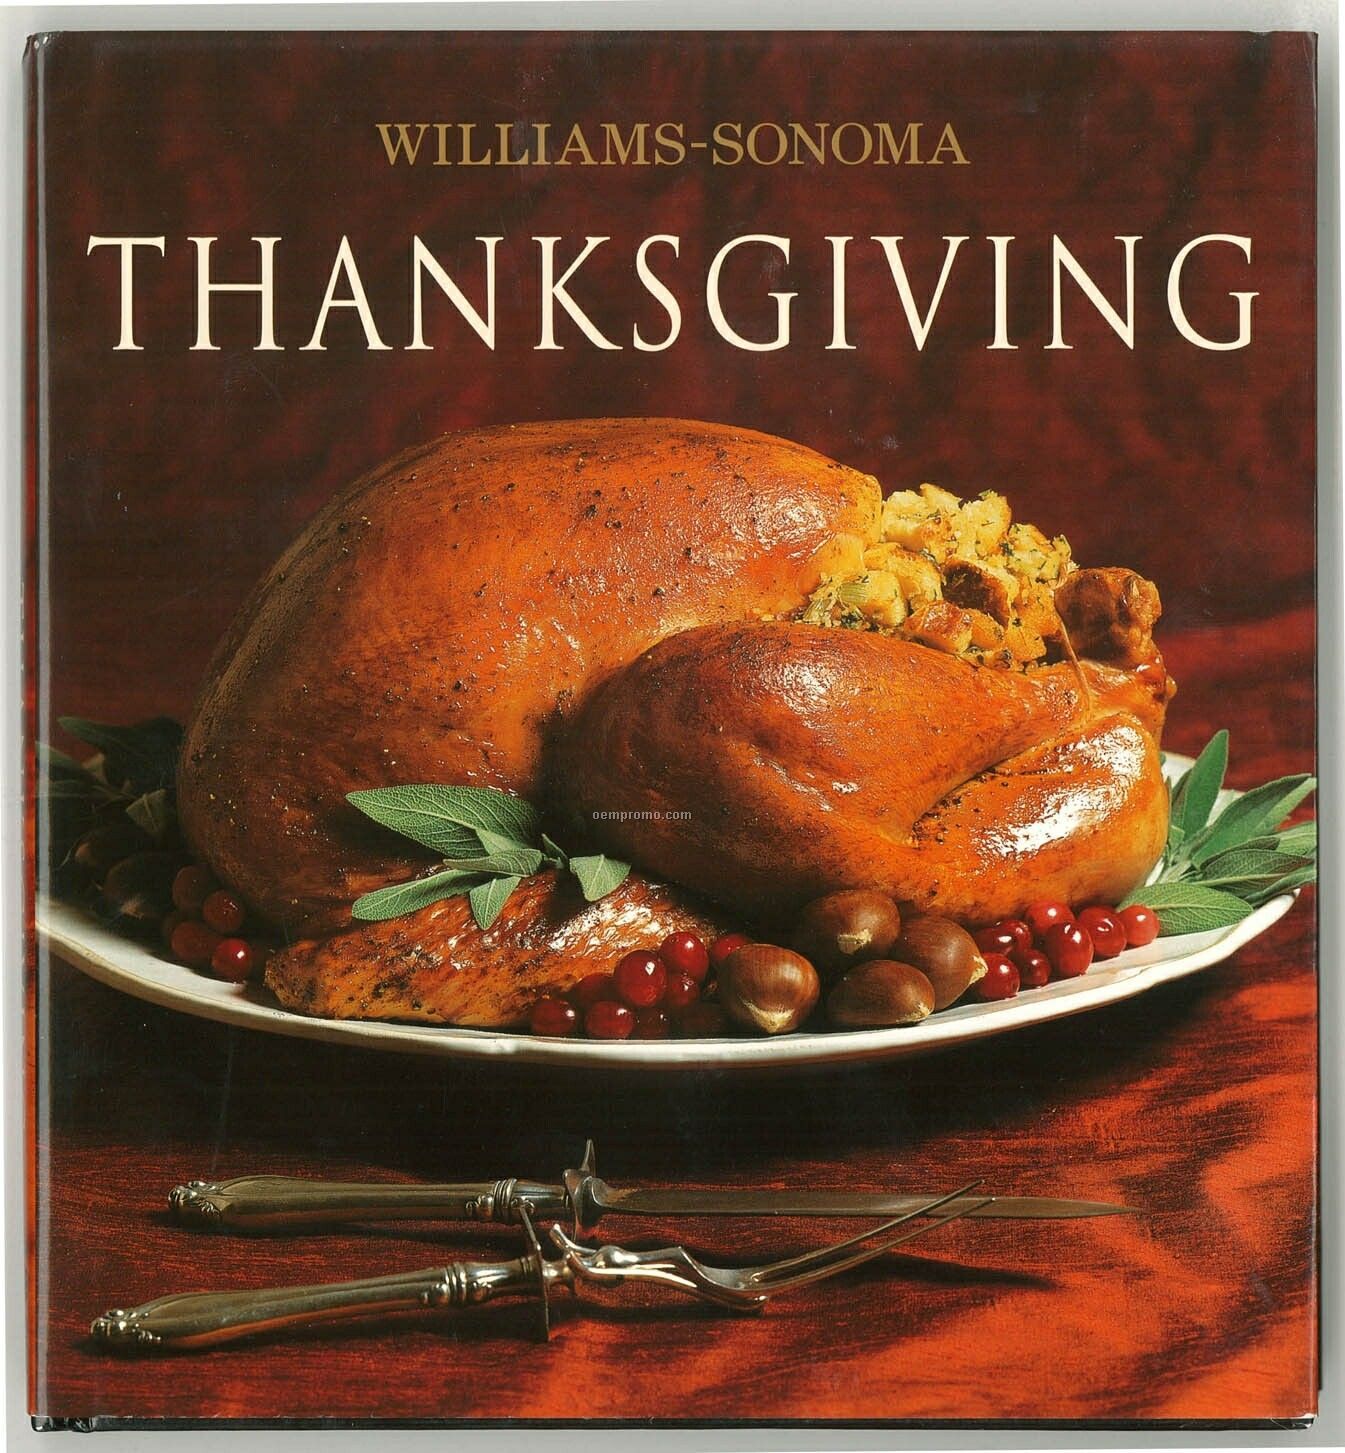 Williams-sonoma Thanksgiving Cookbook